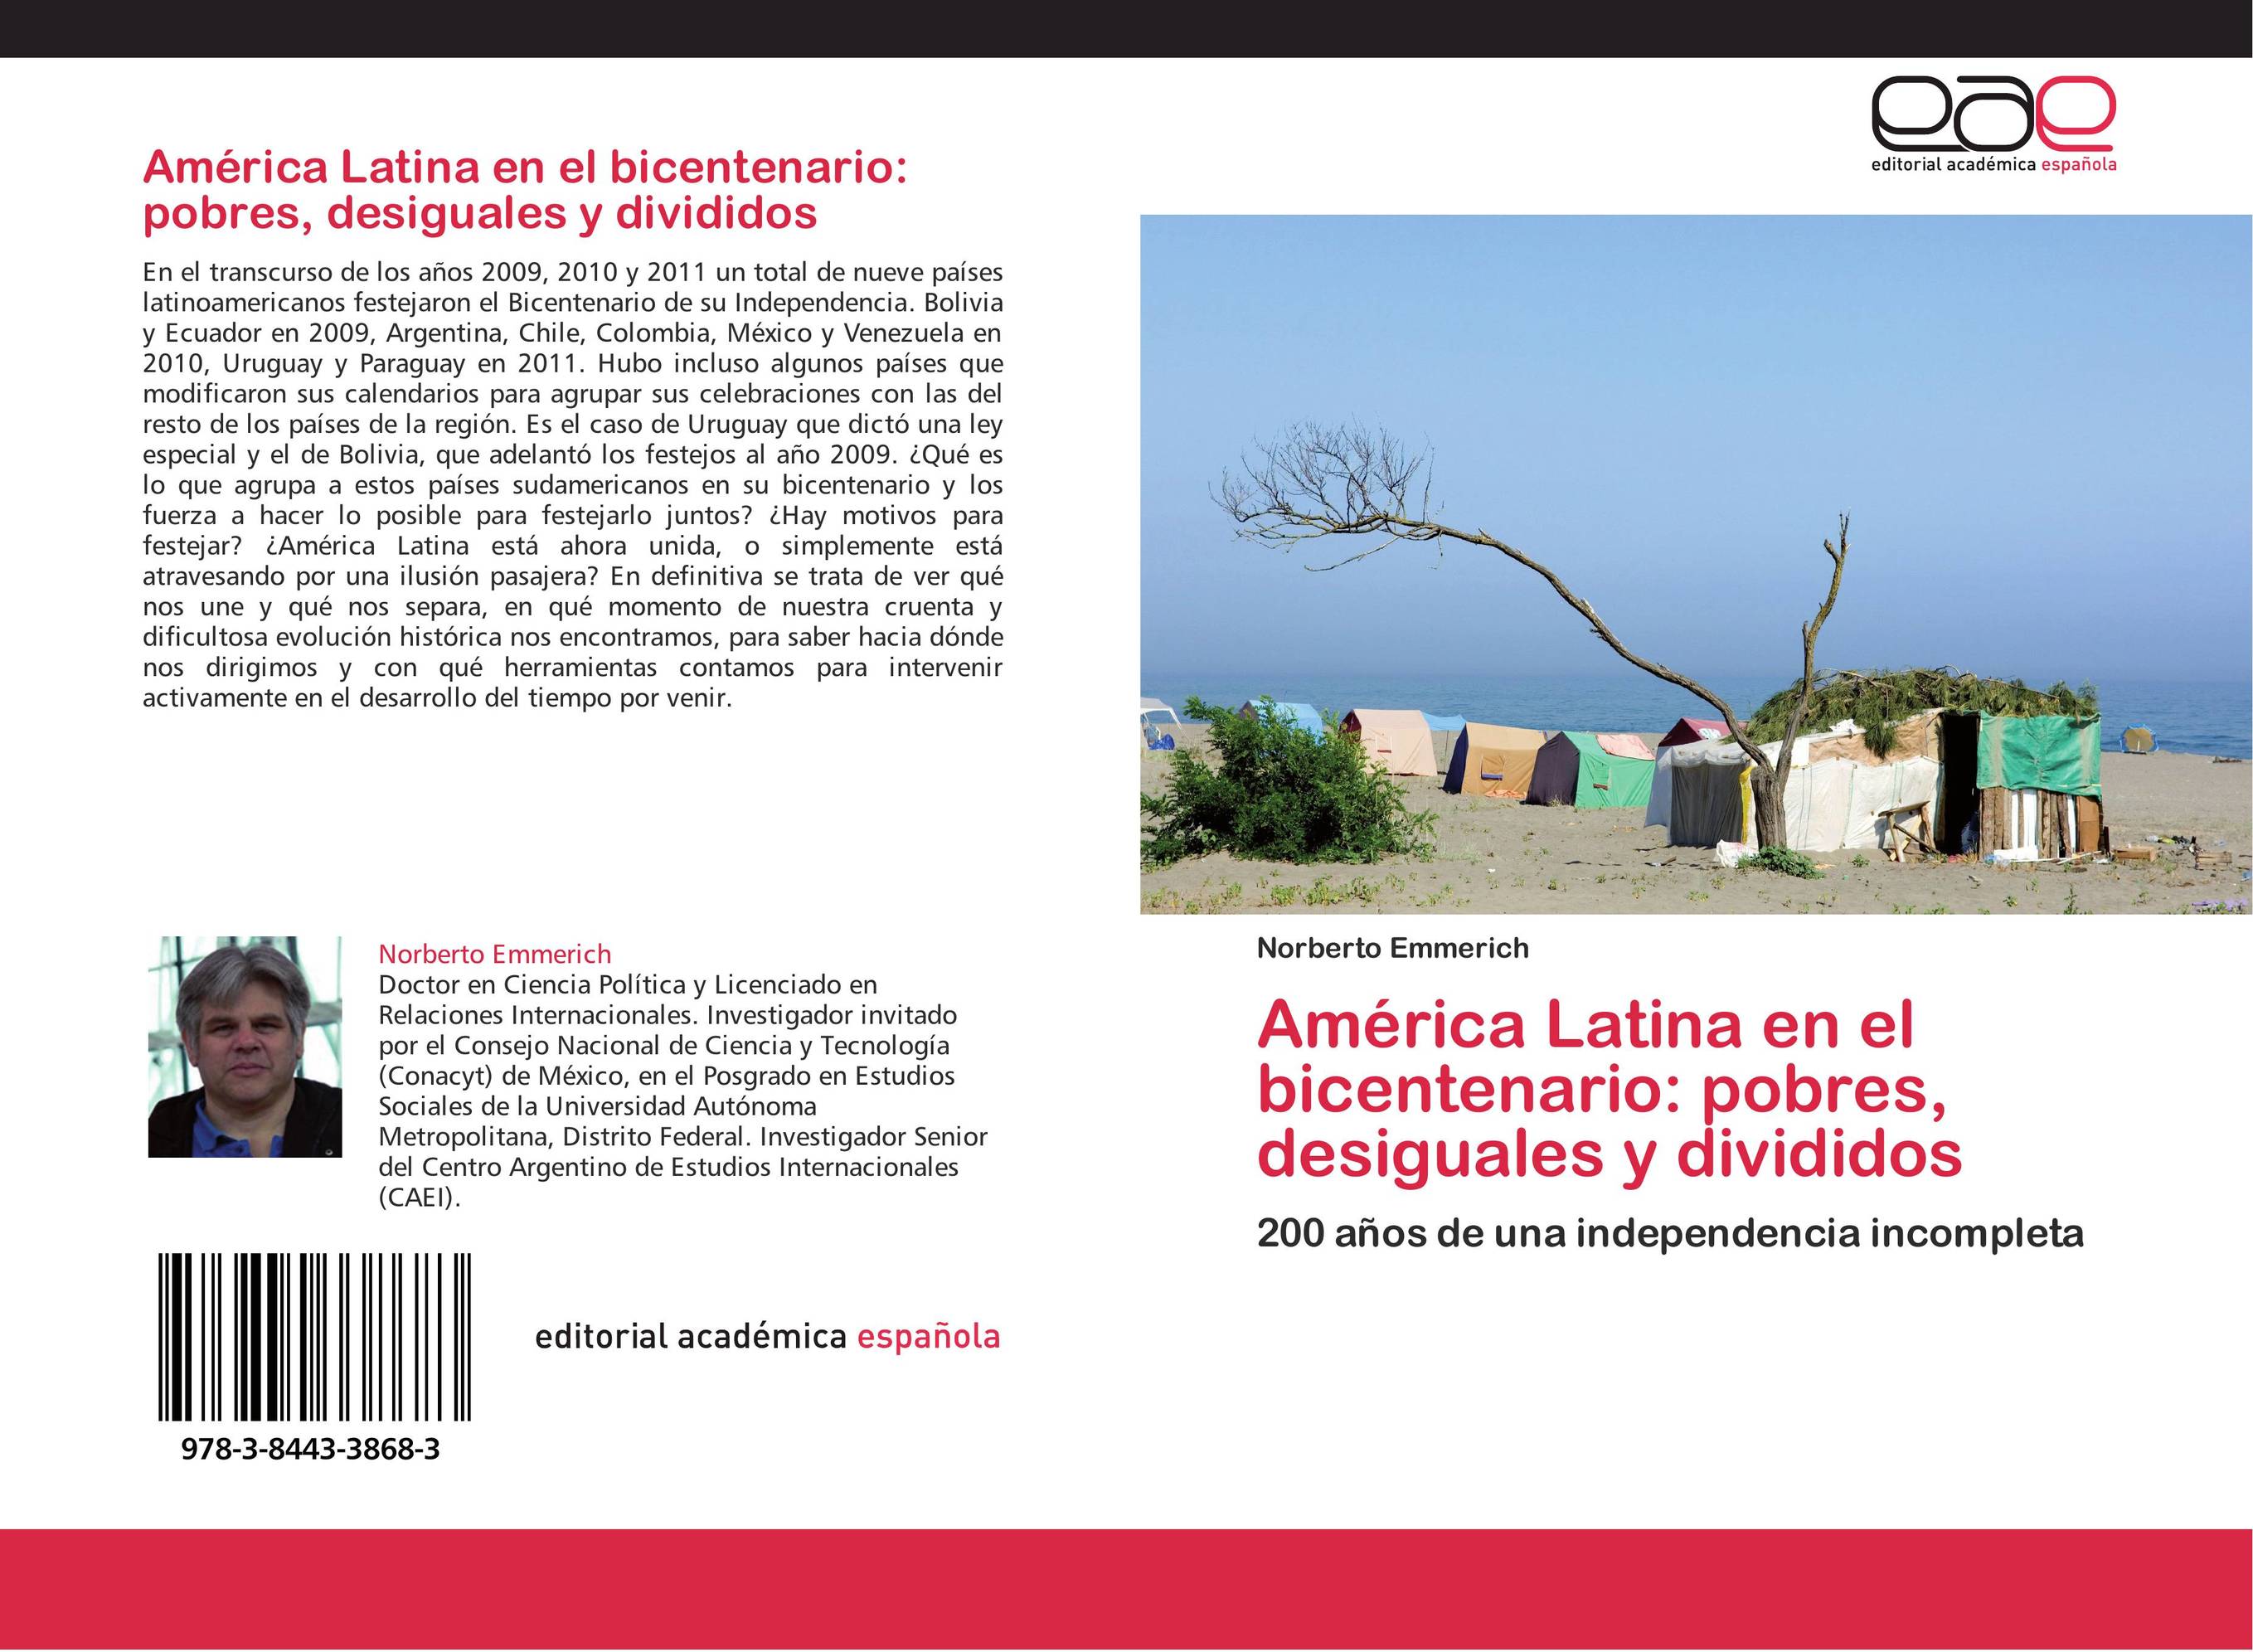 América Latina en el bicentenario: pobres, desiguales y divididos